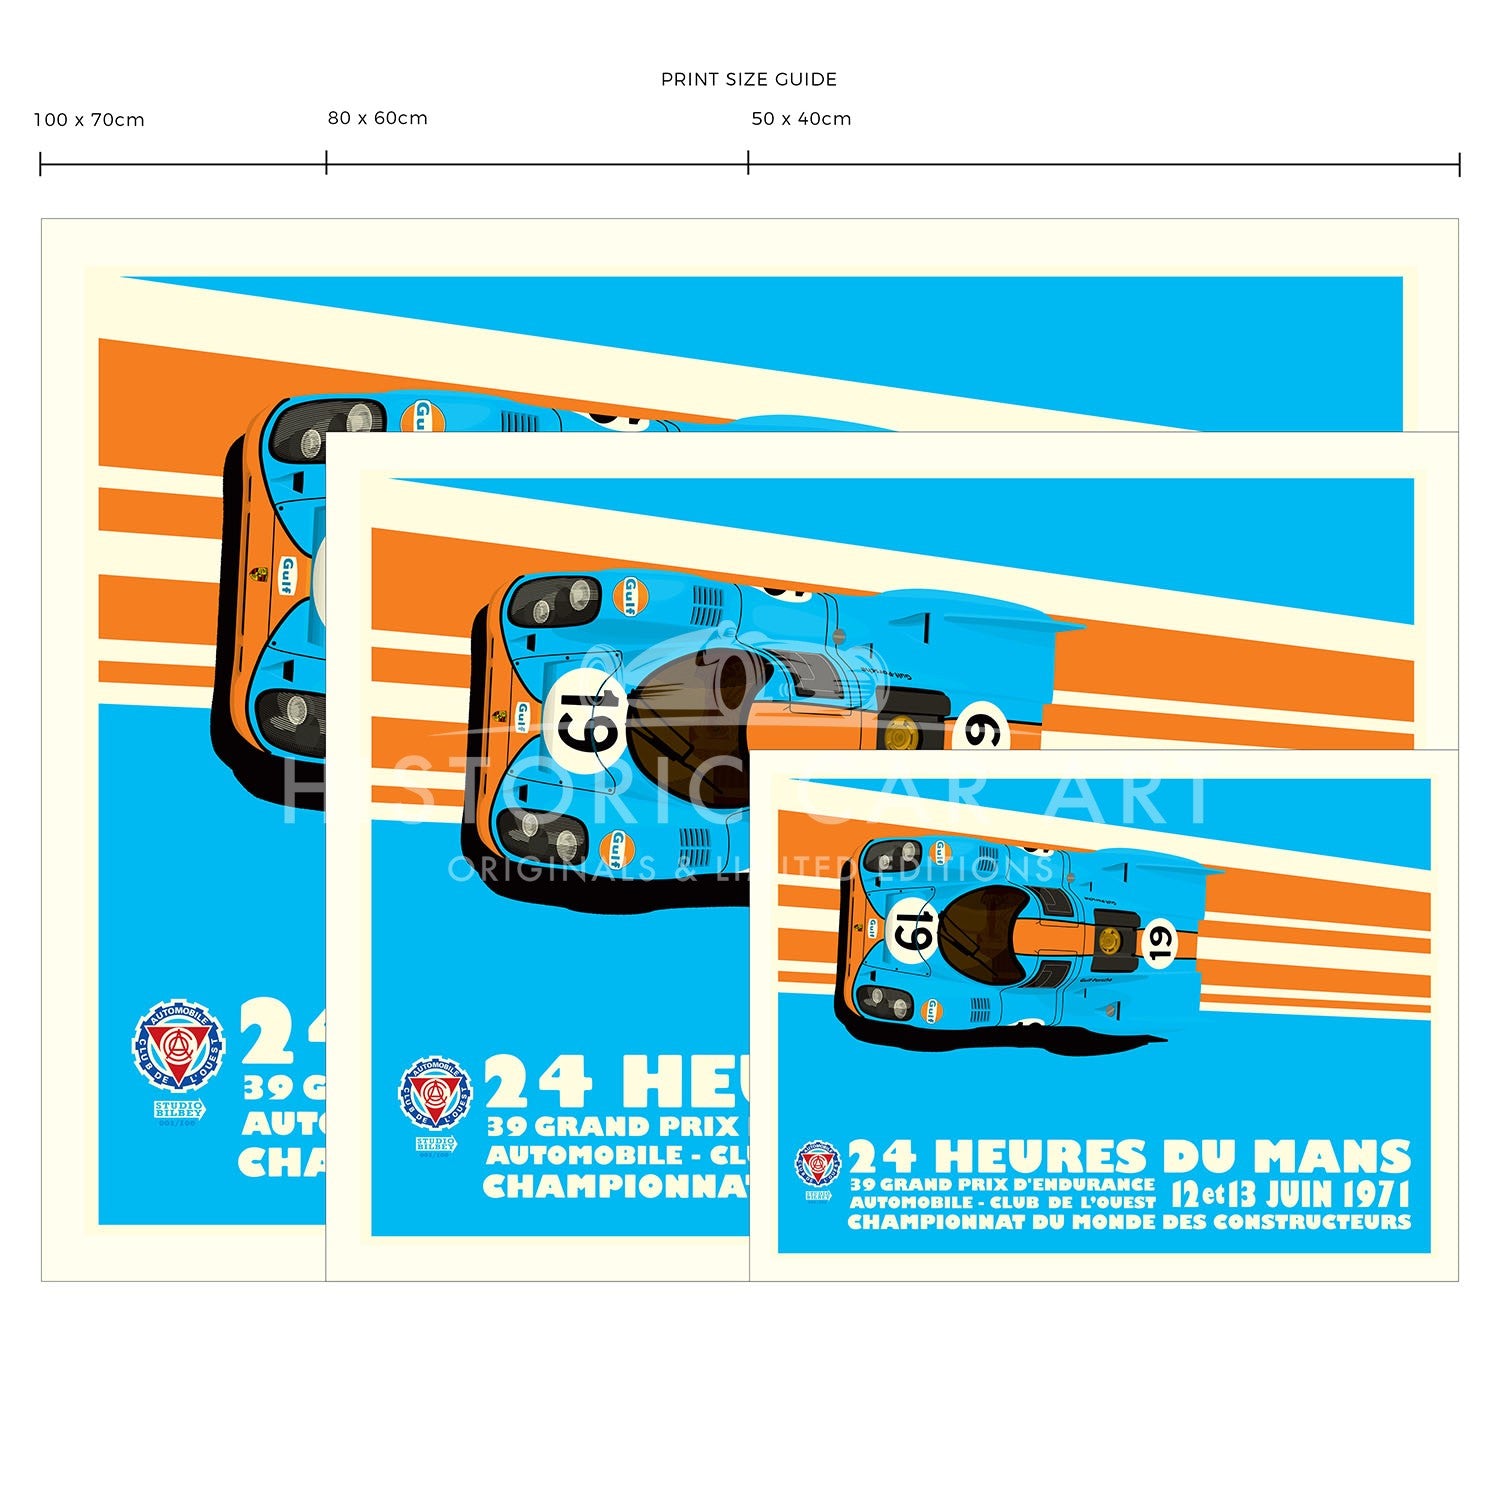 Ferrari 512M Rivals | Le Mans 24H | Art Print